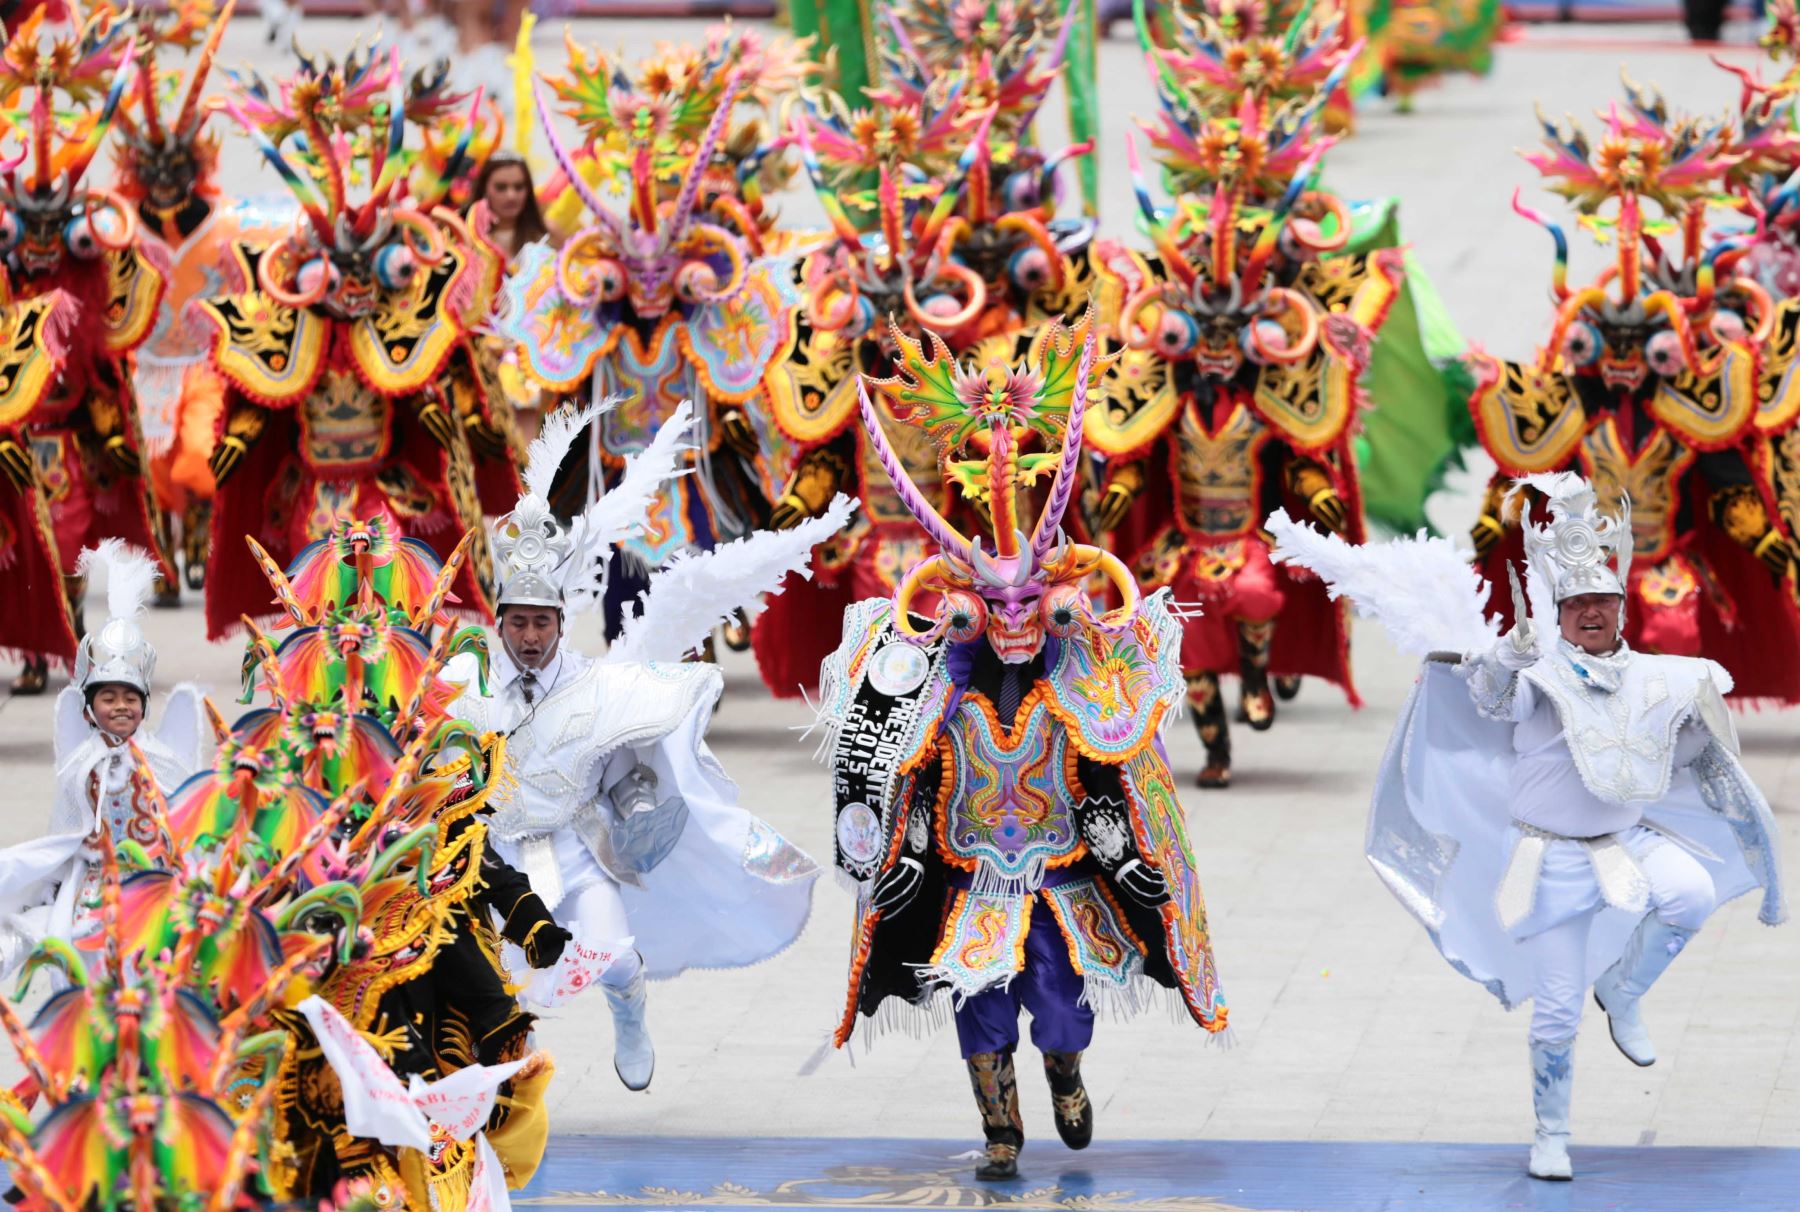 Uno de los hitos más relevantes de la festividad en honor de la Virgen de la Candelaria es la Octava, en la que se desarrollan ritos religiosos donde se venera con profunda fe y devoción a la patrona de Puno, y también un fastuoso despliegue de conjuntos de danzas y música que evidencian por qué se considera a esta región altiplánica como la capital del folclor peruano.  ANDINA/Carlos Lezama Villantoy